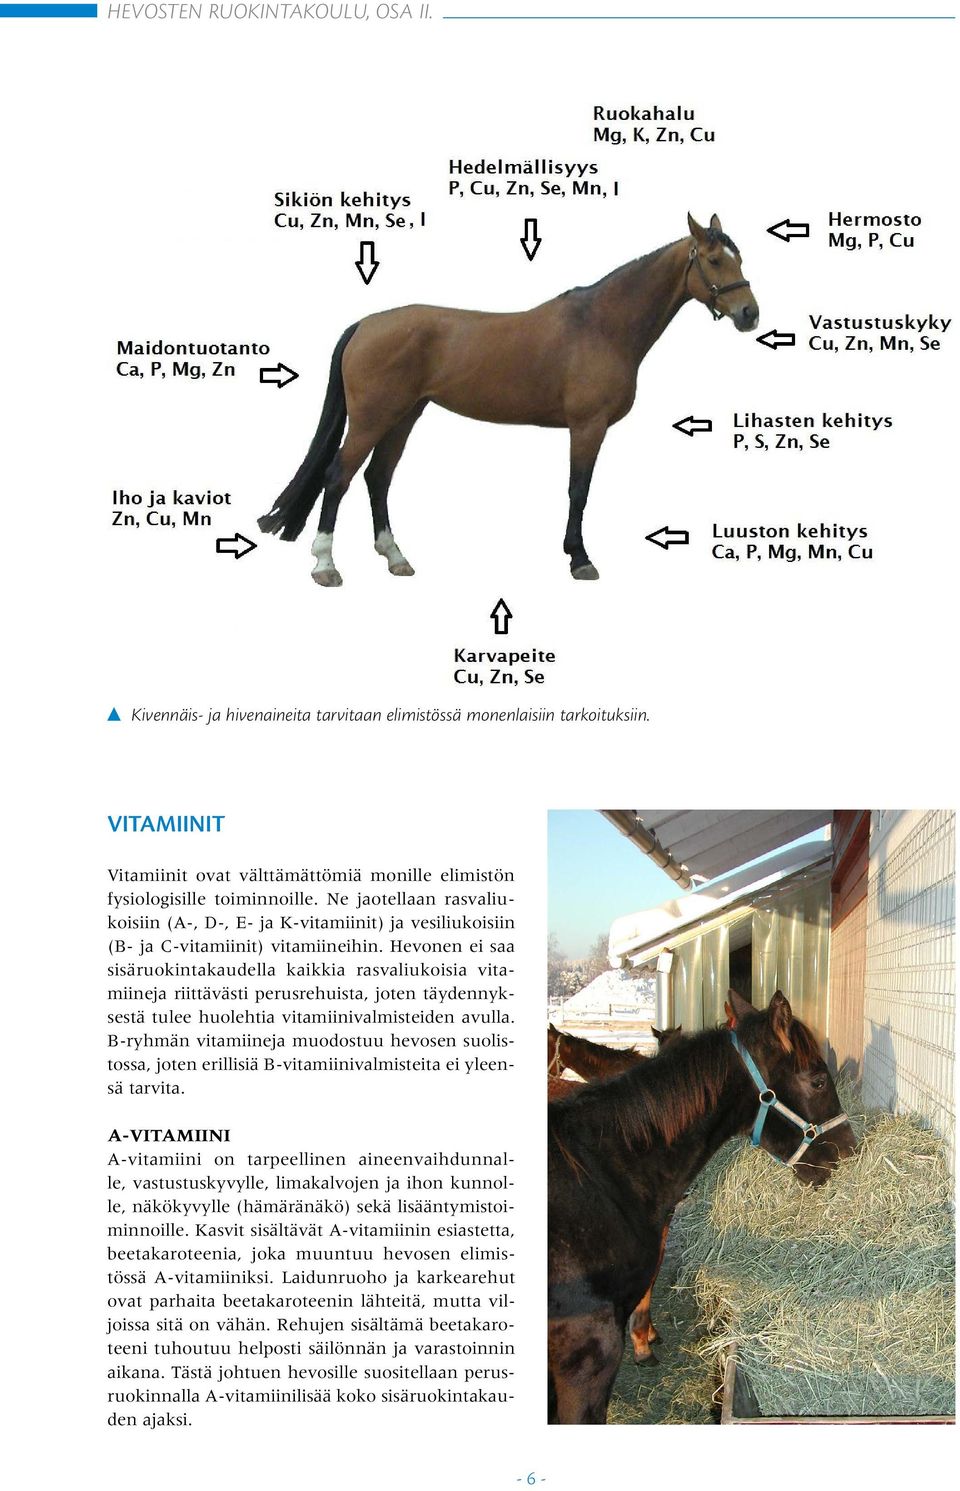 Hevonen ei saa sisäruokintakaudella kaikkia rasvaliukoisia vitamiineja riittävästi perusrehuista, joten täydennyksestä tulee huolehtia vitamiinivalmisteiden avulla.